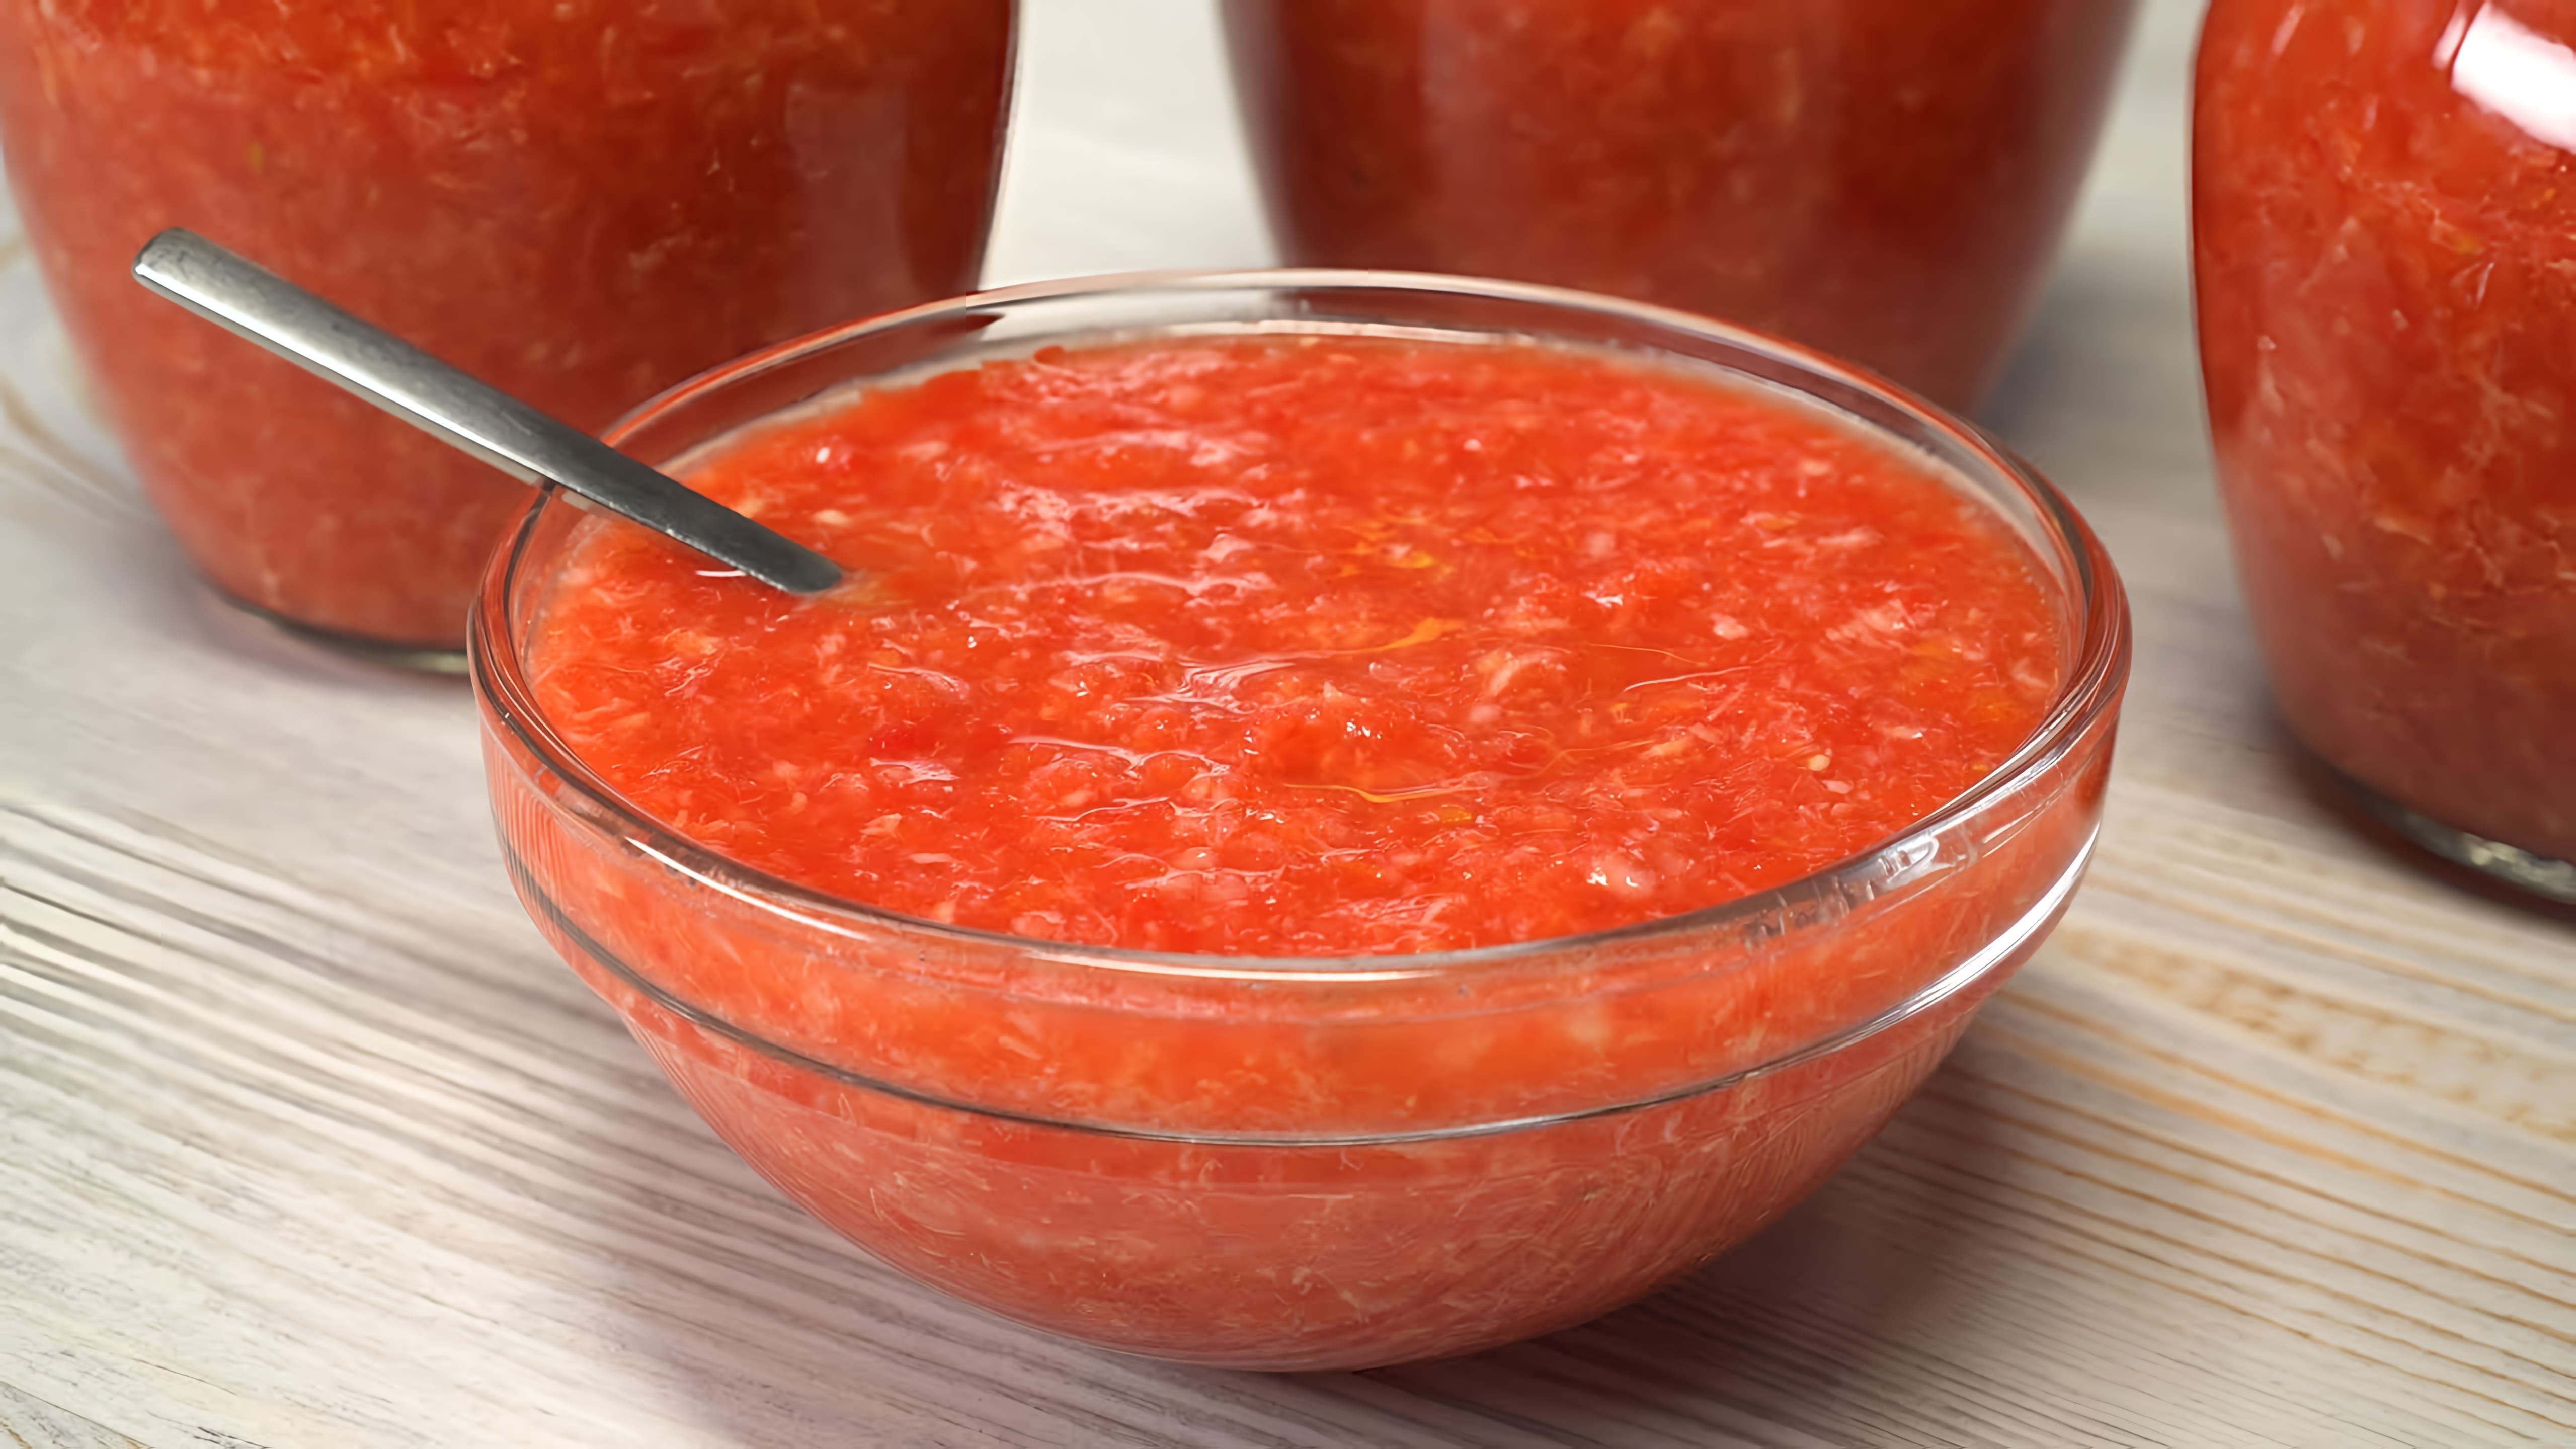 Хреновый соус - это неповторимый рецепт, который сочетает в себе хрен, помидоры и чеснок